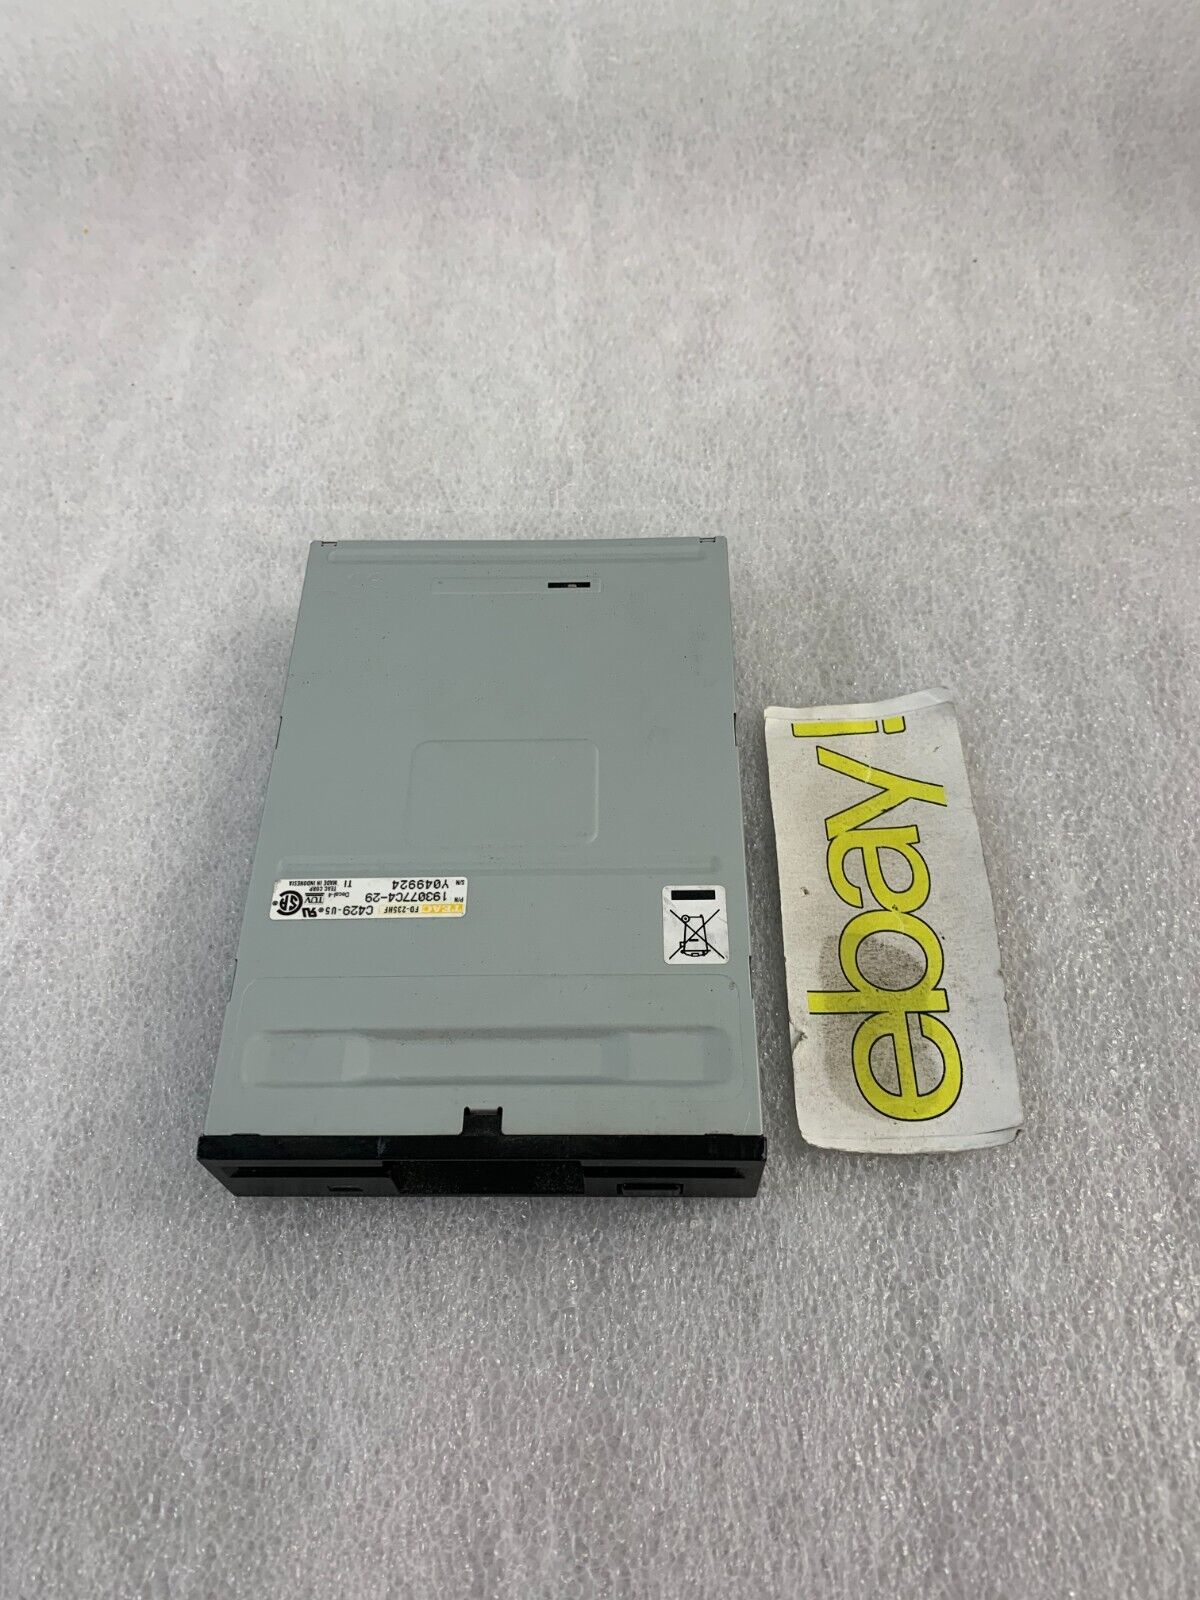 TEAC FD-235HF C429-U5 3.5 Inch Floppy Disk Drive FDD 193077C4-29 